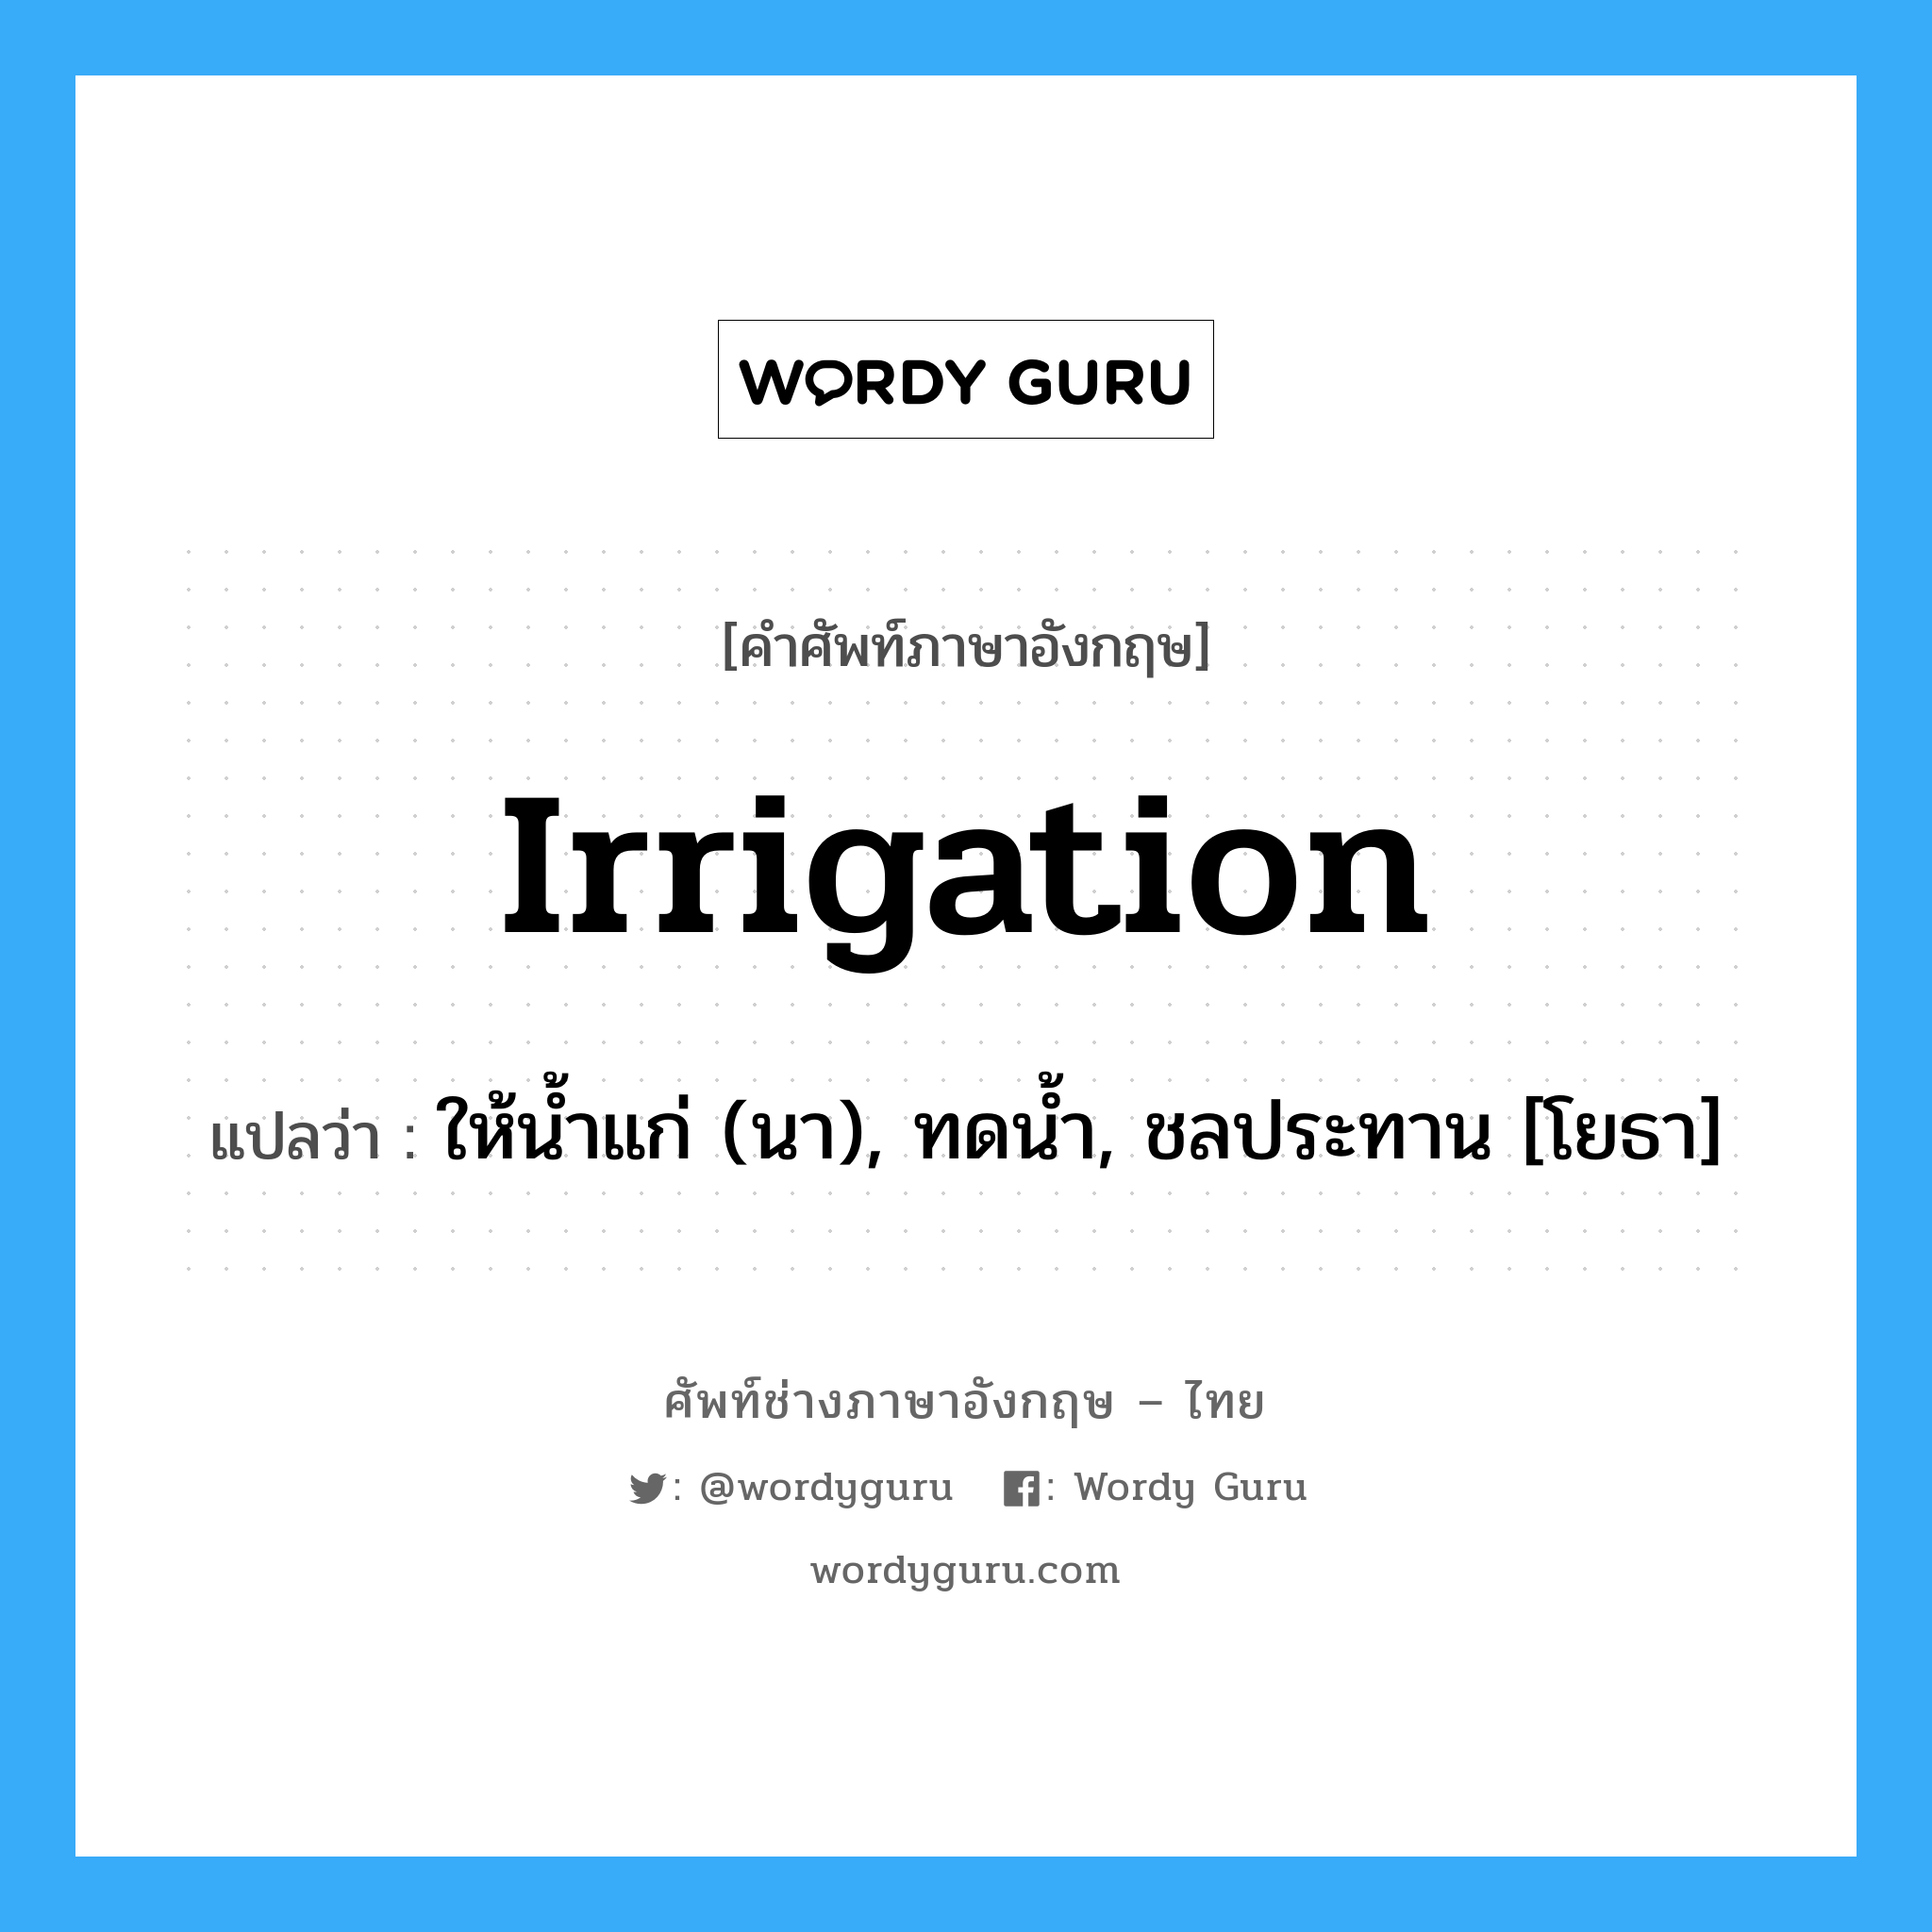 irrigation แปลว่า?, คำศัพท์ช่างภาษาอังกฤษ - ไทย irrigation คำศัพท์ภาษาอังกฤษ irrigation แปลว่า ให้น้ำแก่ (นา), ทดน้ำ, ชลประทาน [โยธา]